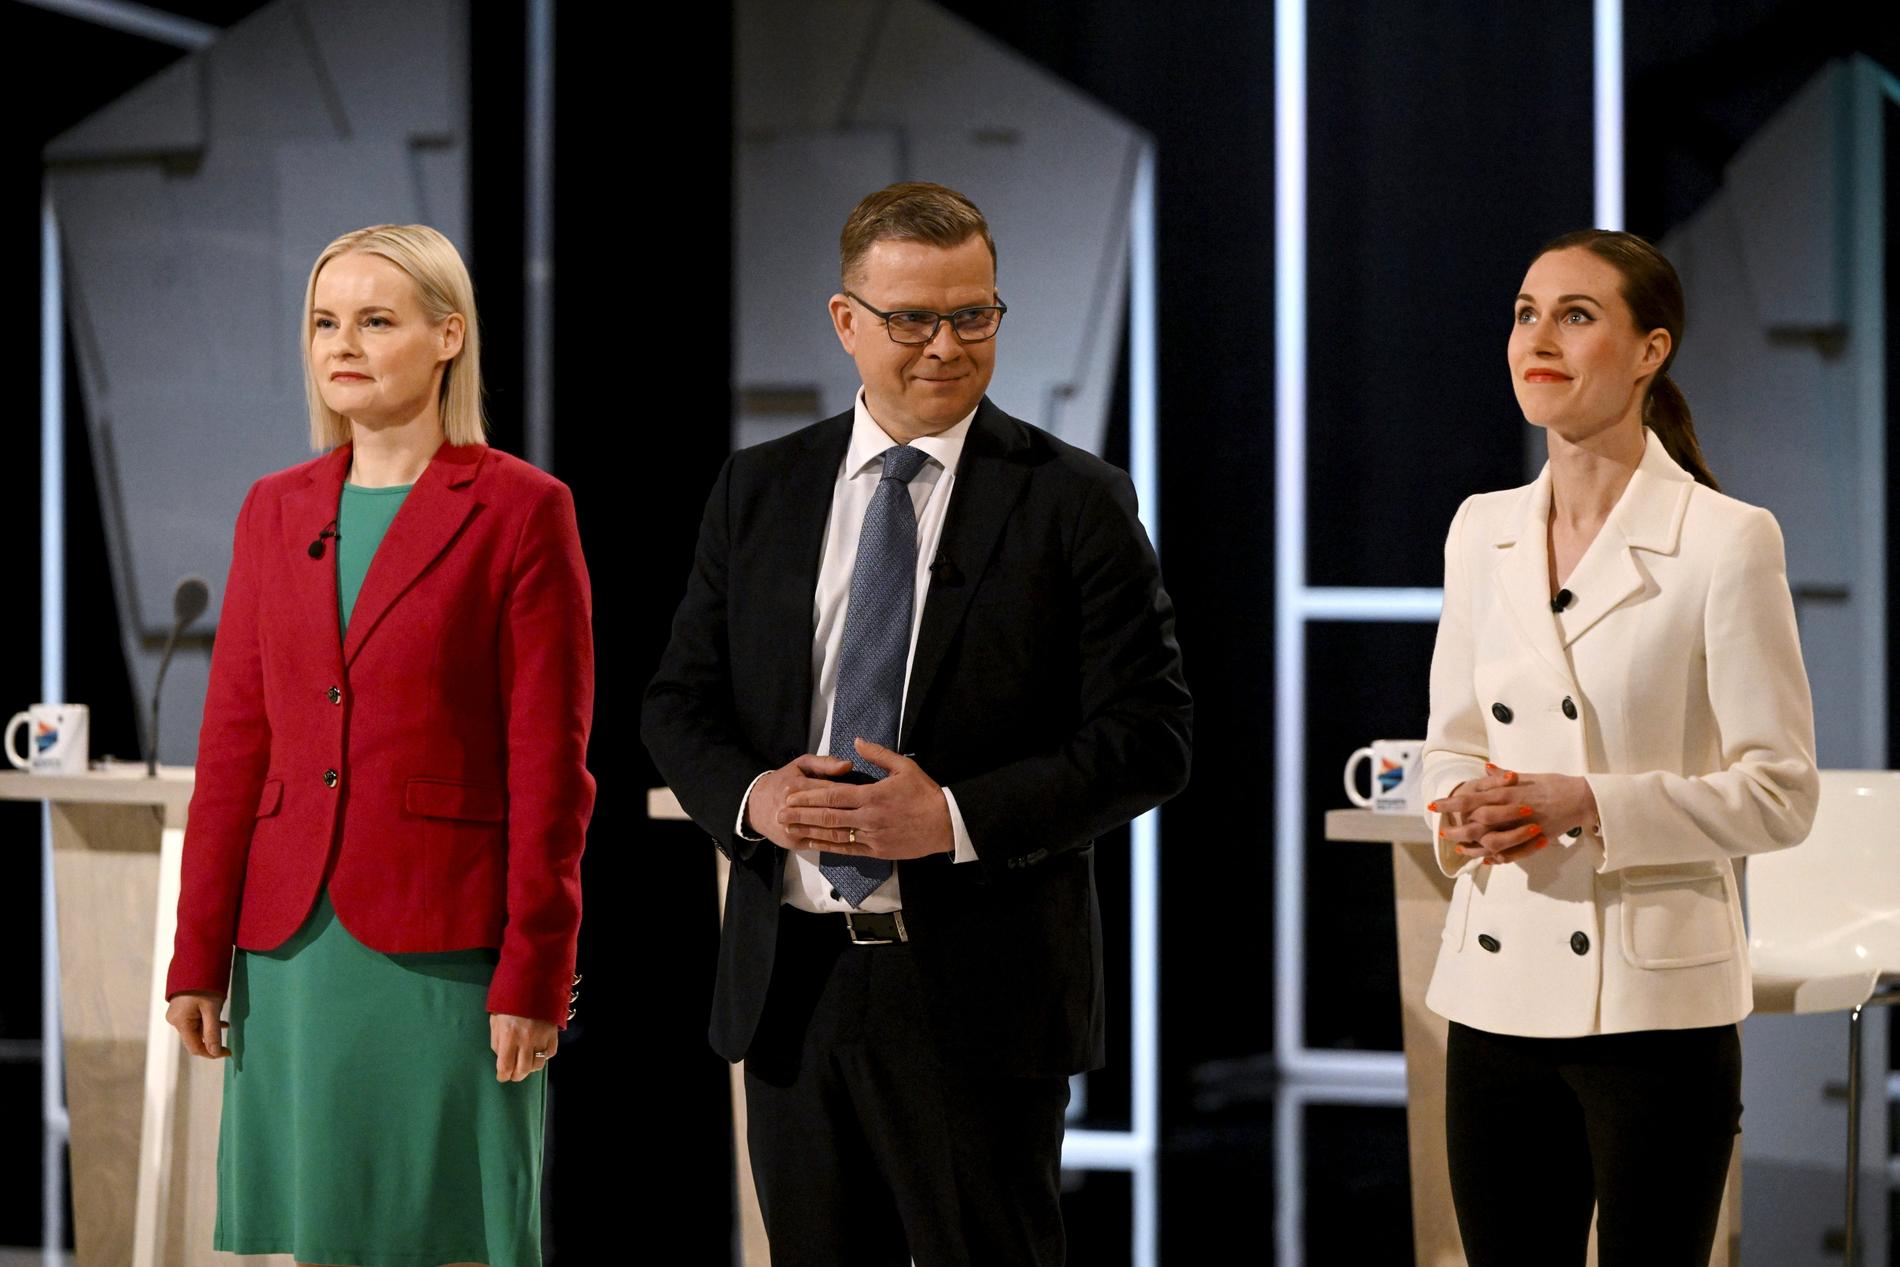 Sannfinländarnas Riikka Purra, Samlingspartiets Petteri Orpo och Socialdemokraternas Sanna Marin under en debatt i torsdags.